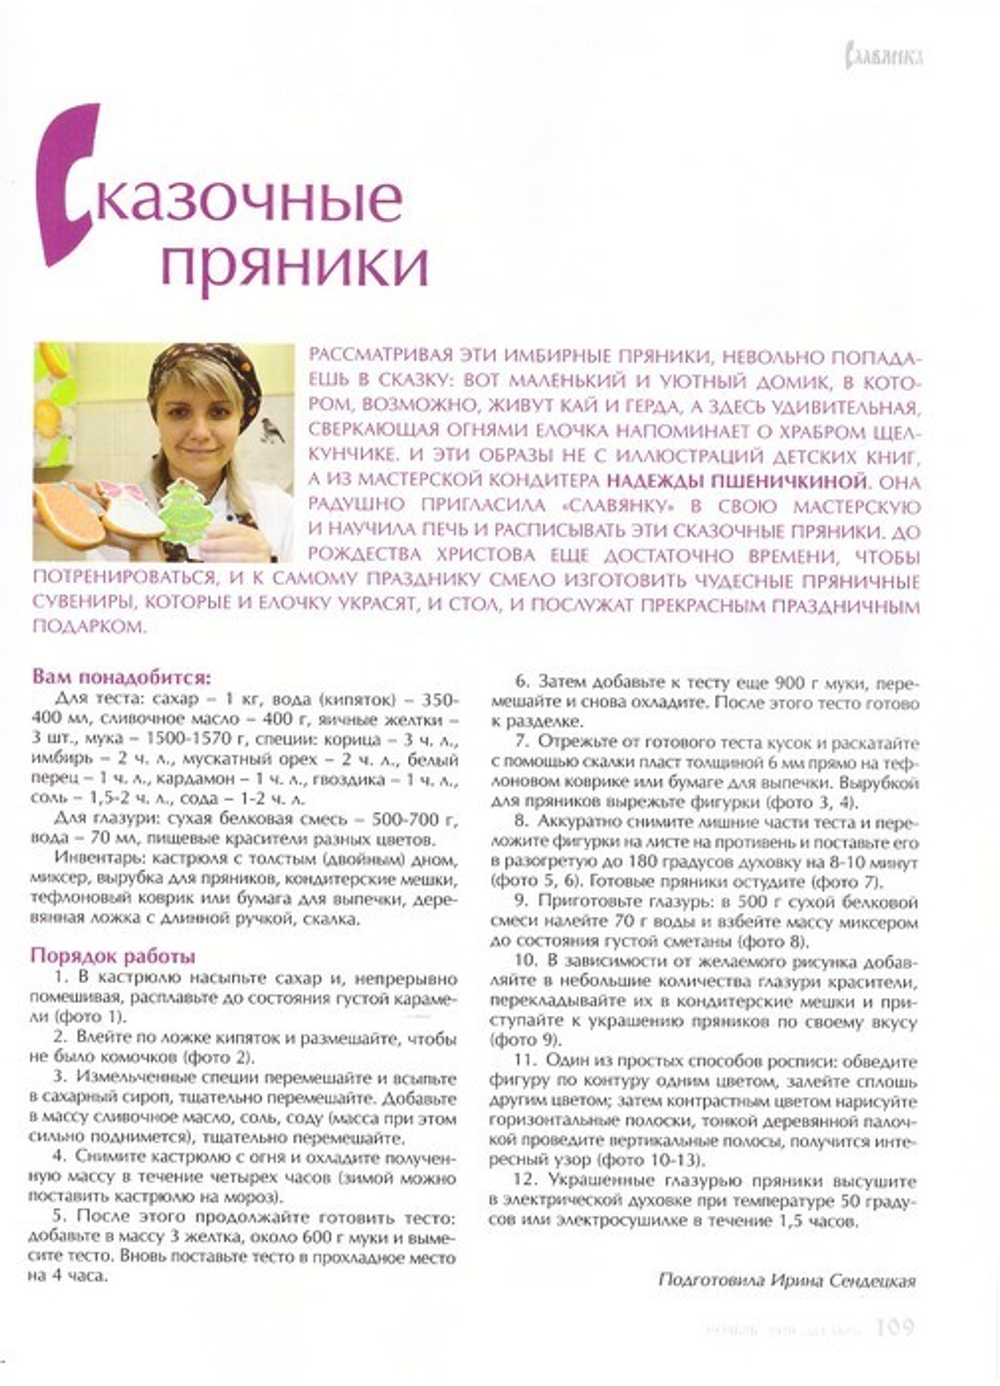 Журнал "Славянка" №6 ноябрь-декабрь 2020 год